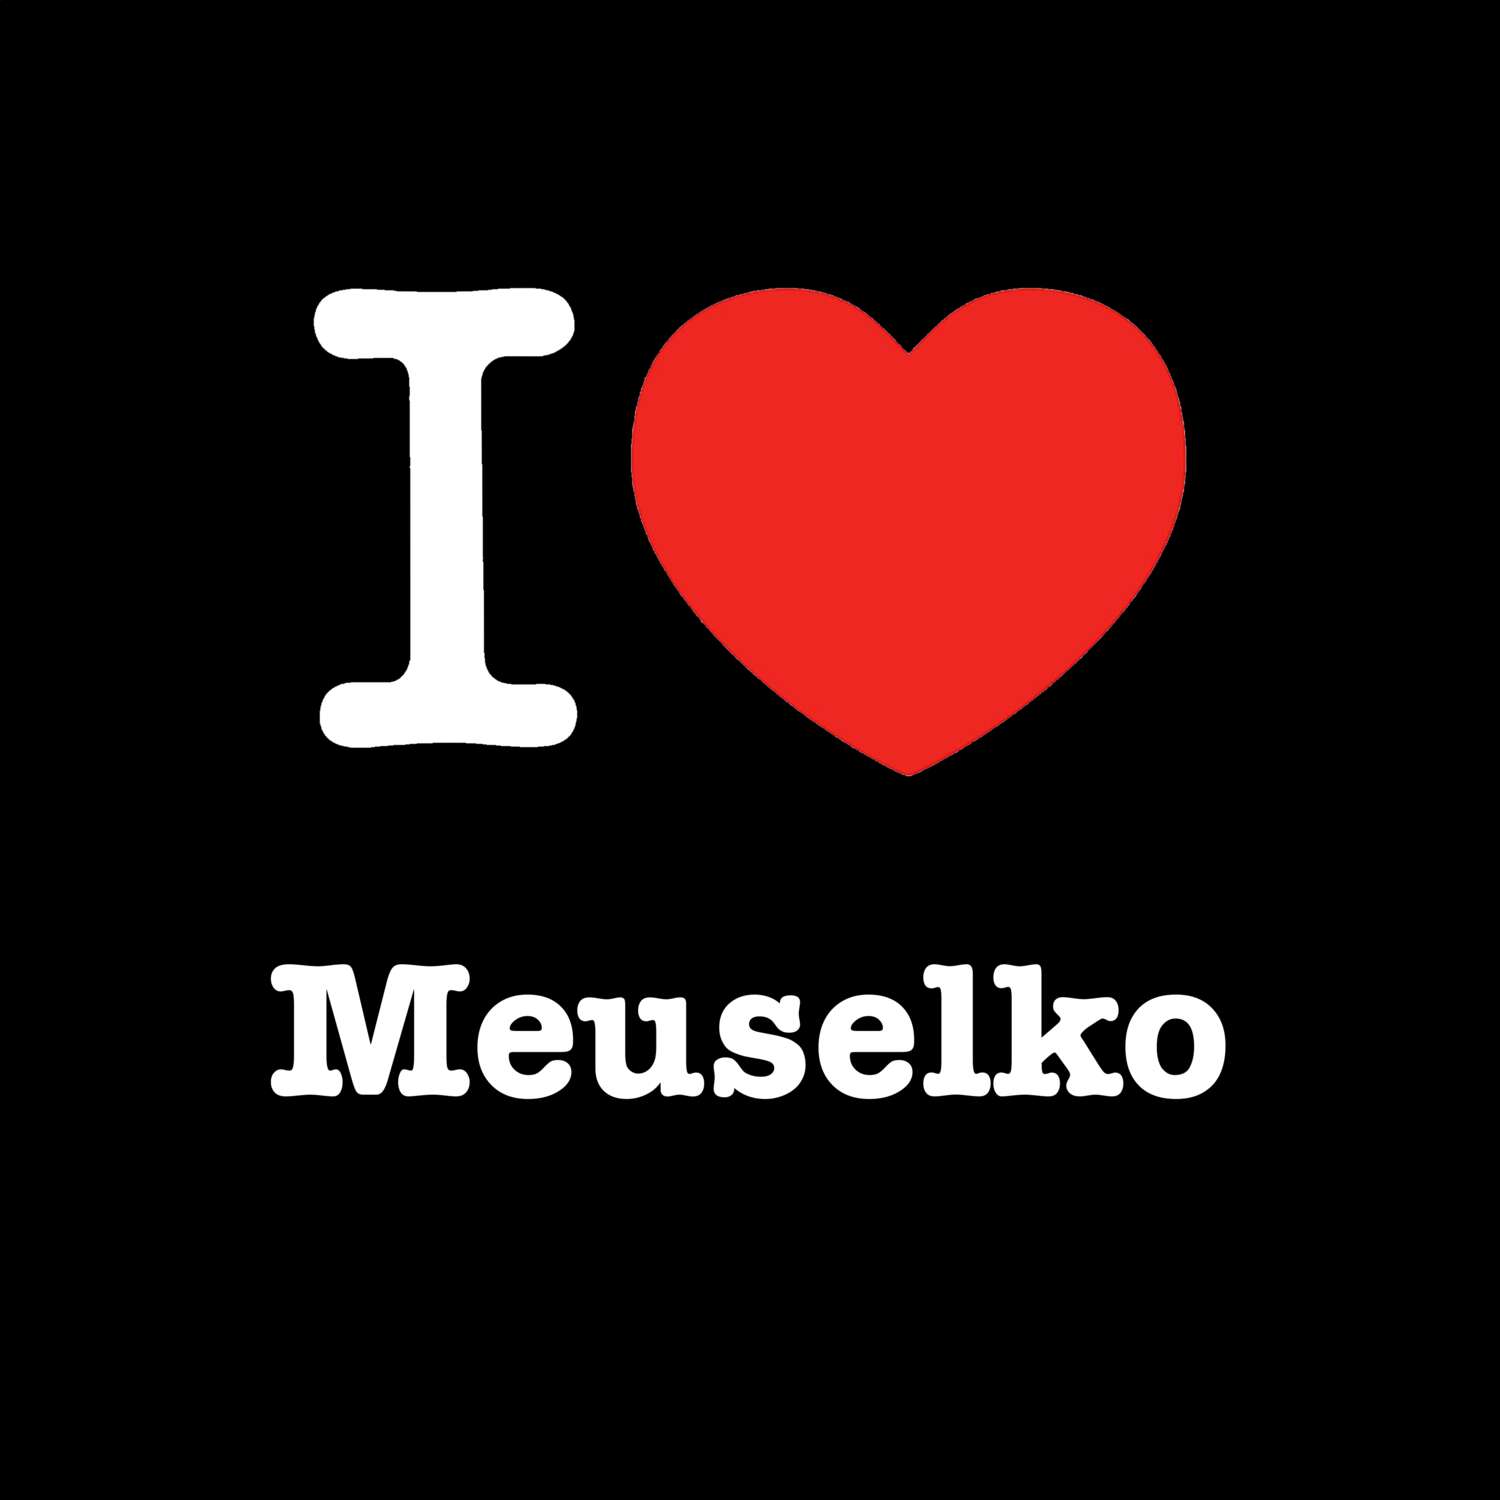 Meuselko T-Shirt »I love«